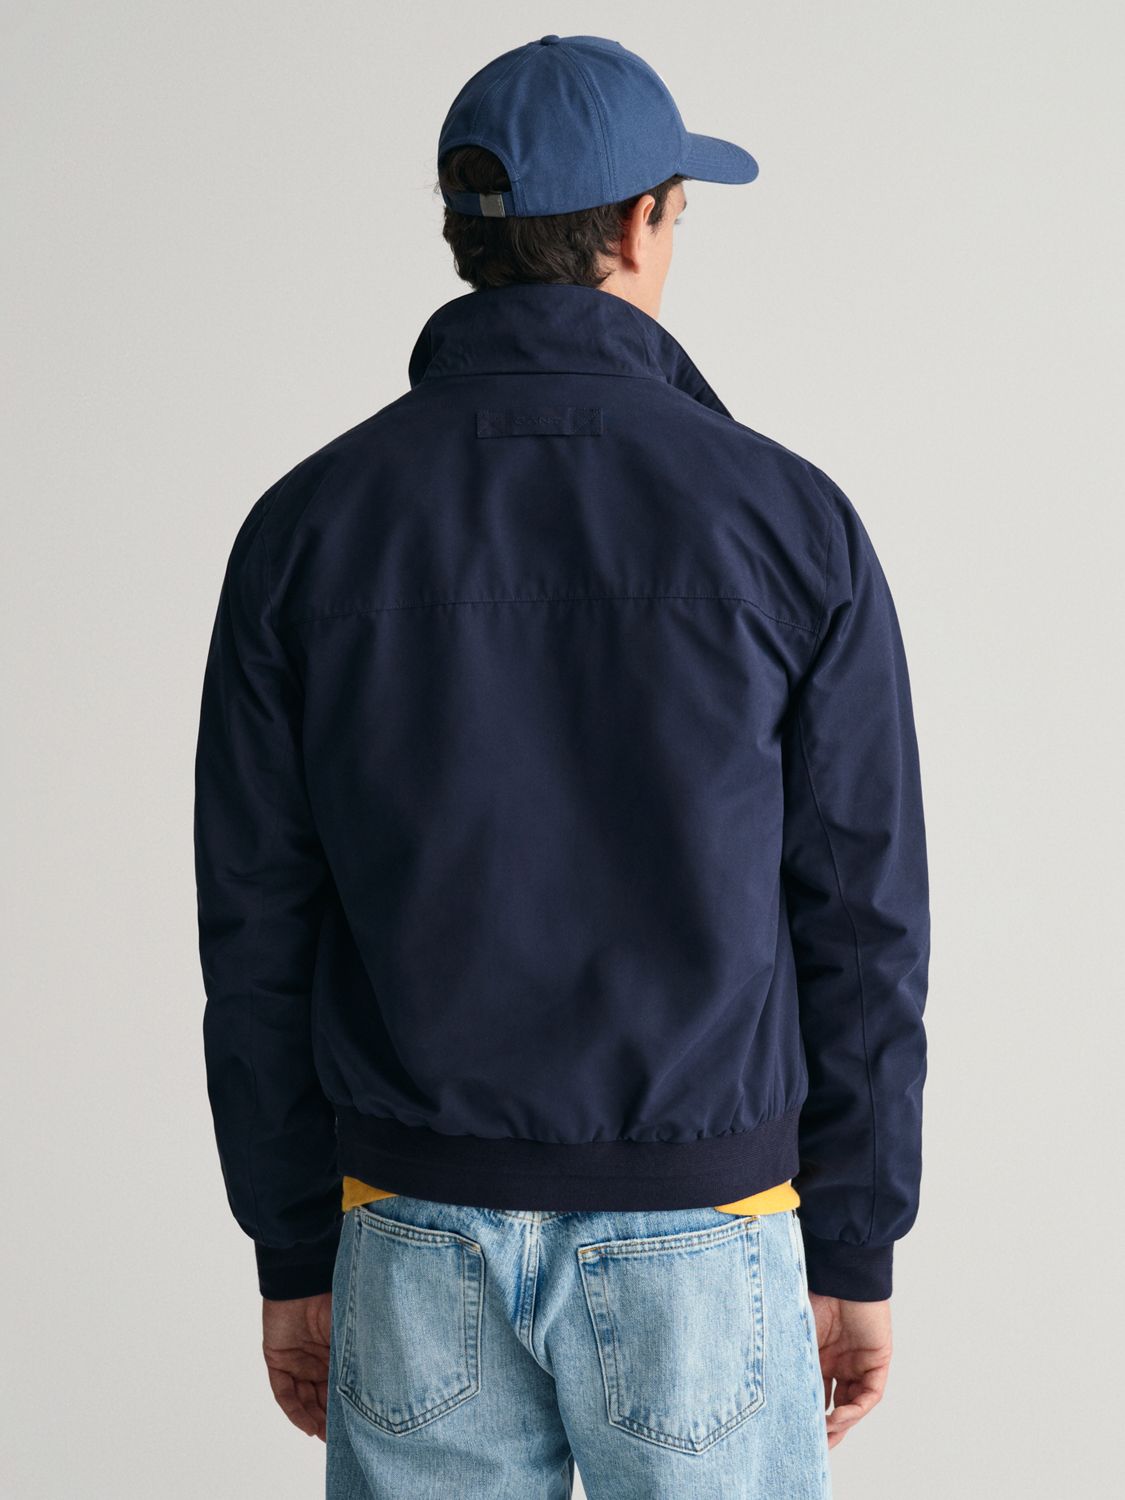 GANT Hampshire Jacket, Blue, M